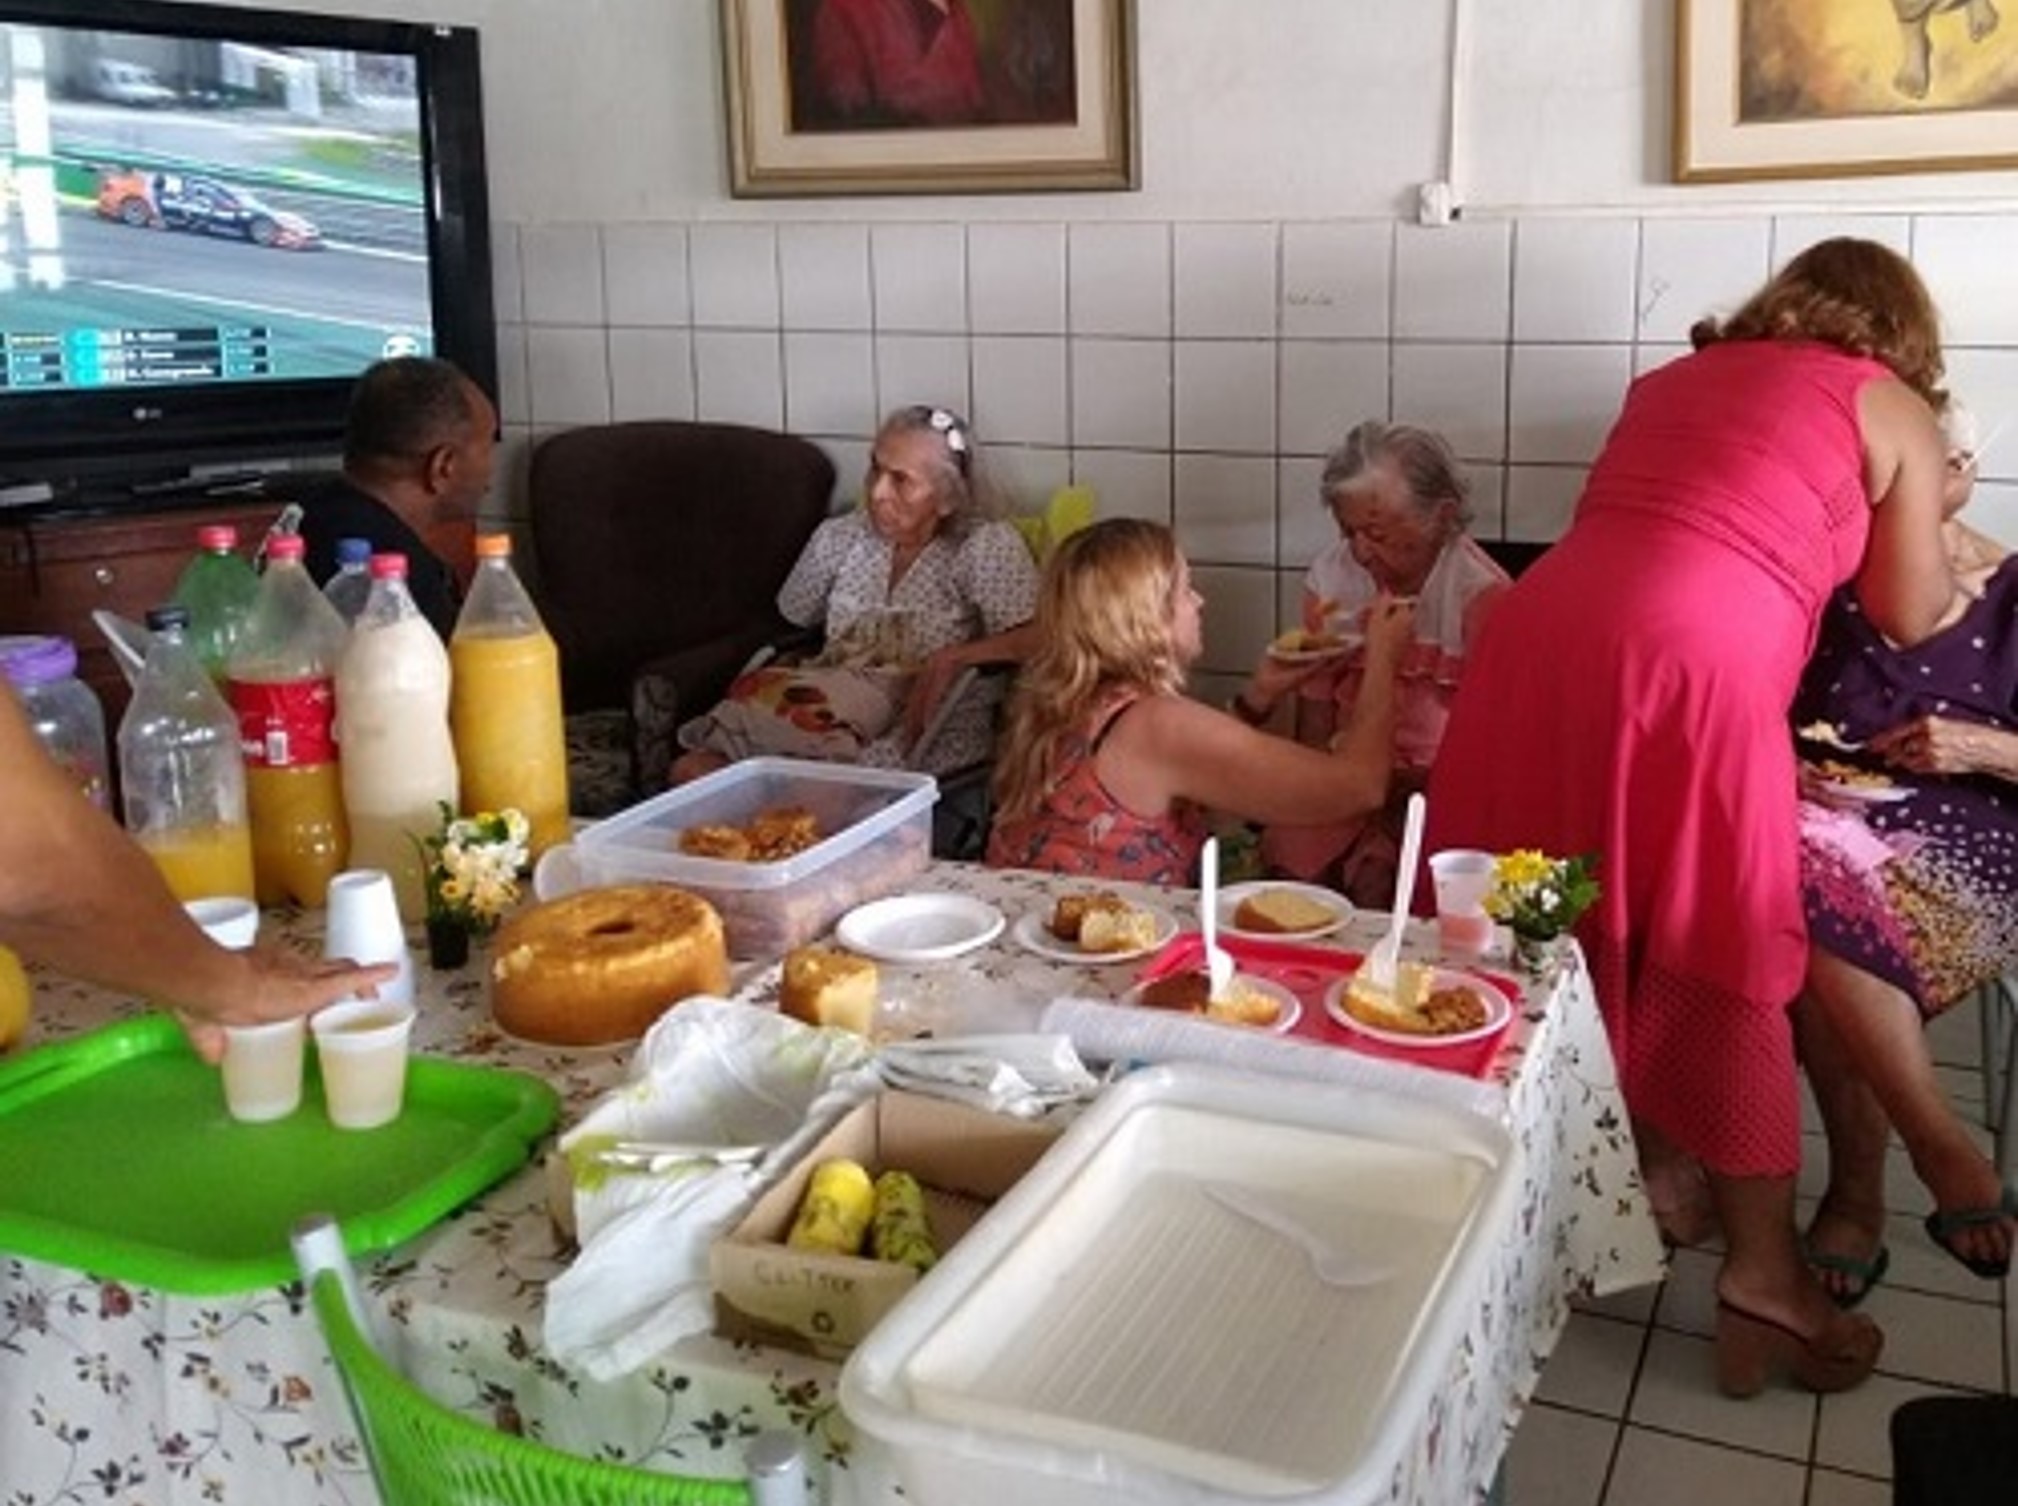 Jovens de Olinda (PE) realizam ação solidária em lar de idosas